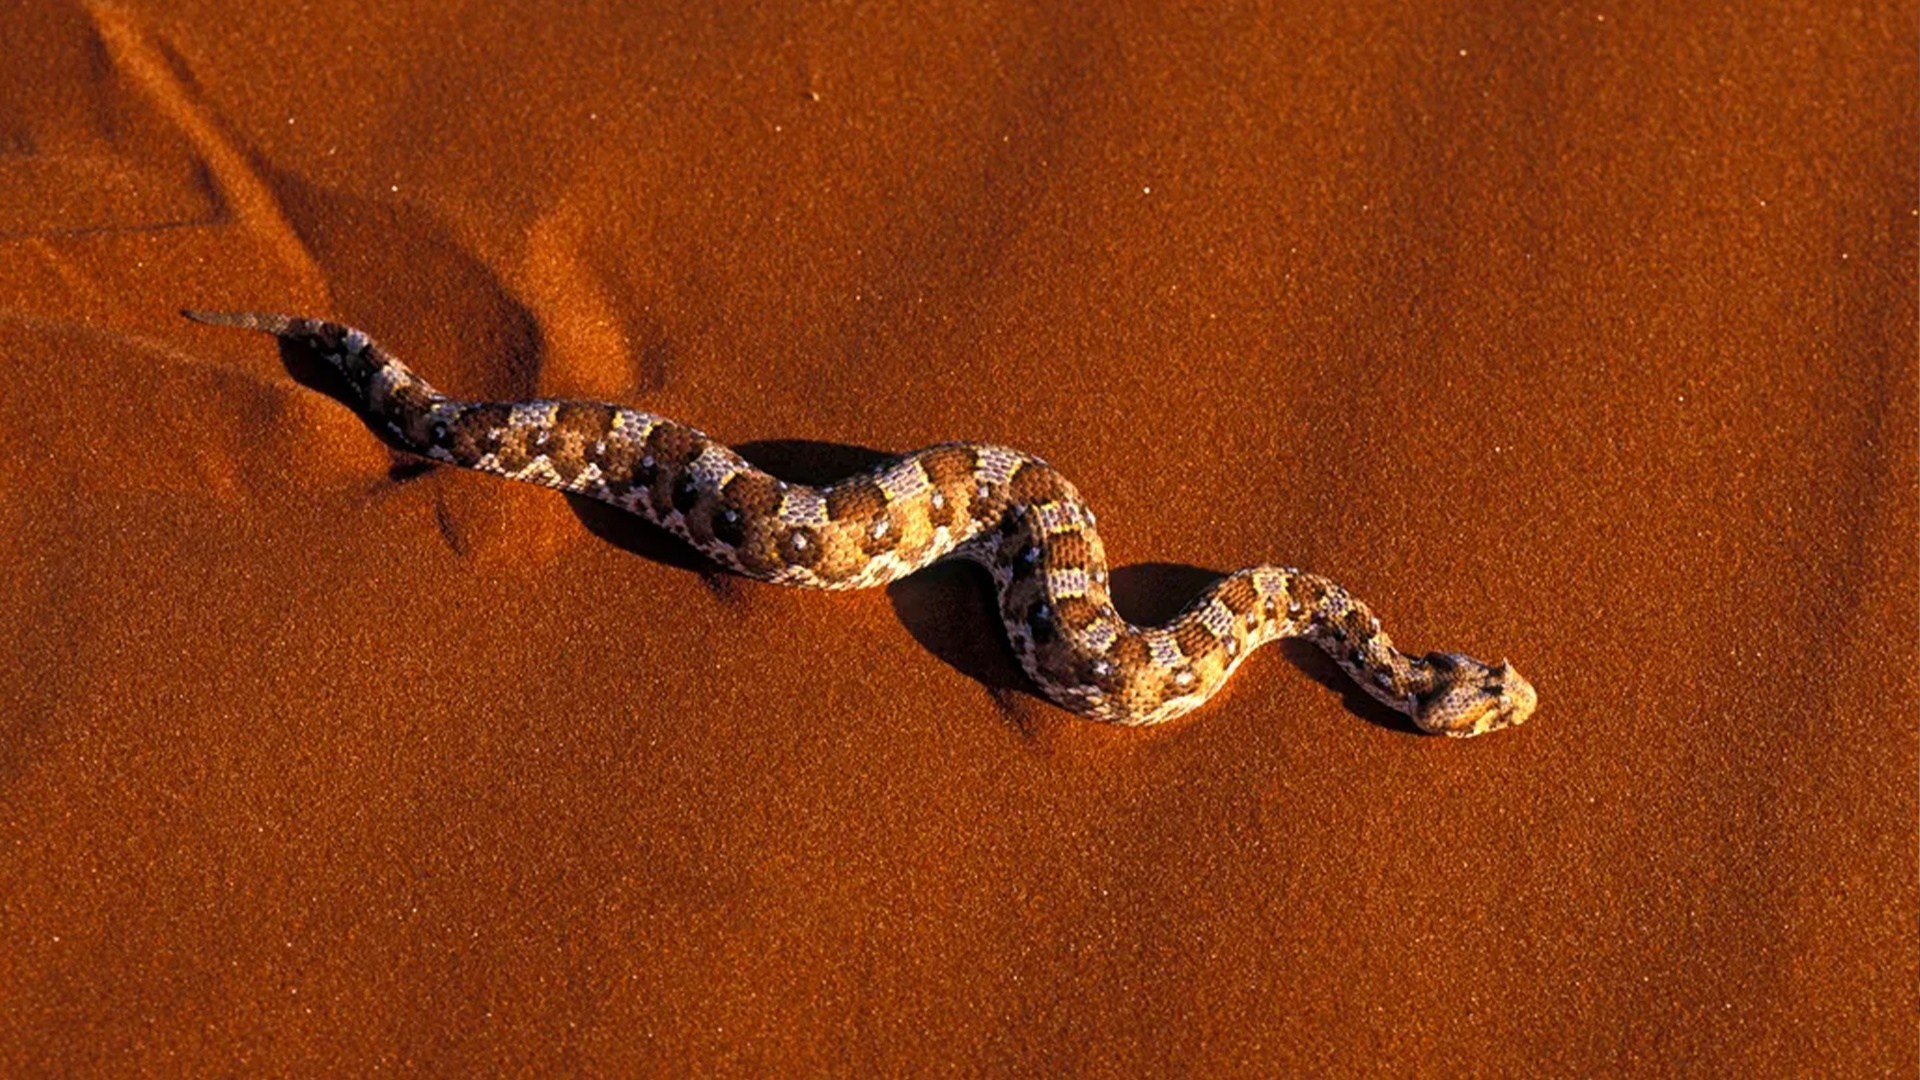 (Prachtig om te herkennen: Het gekronkel van de slang. (Afbeelding: BBC))